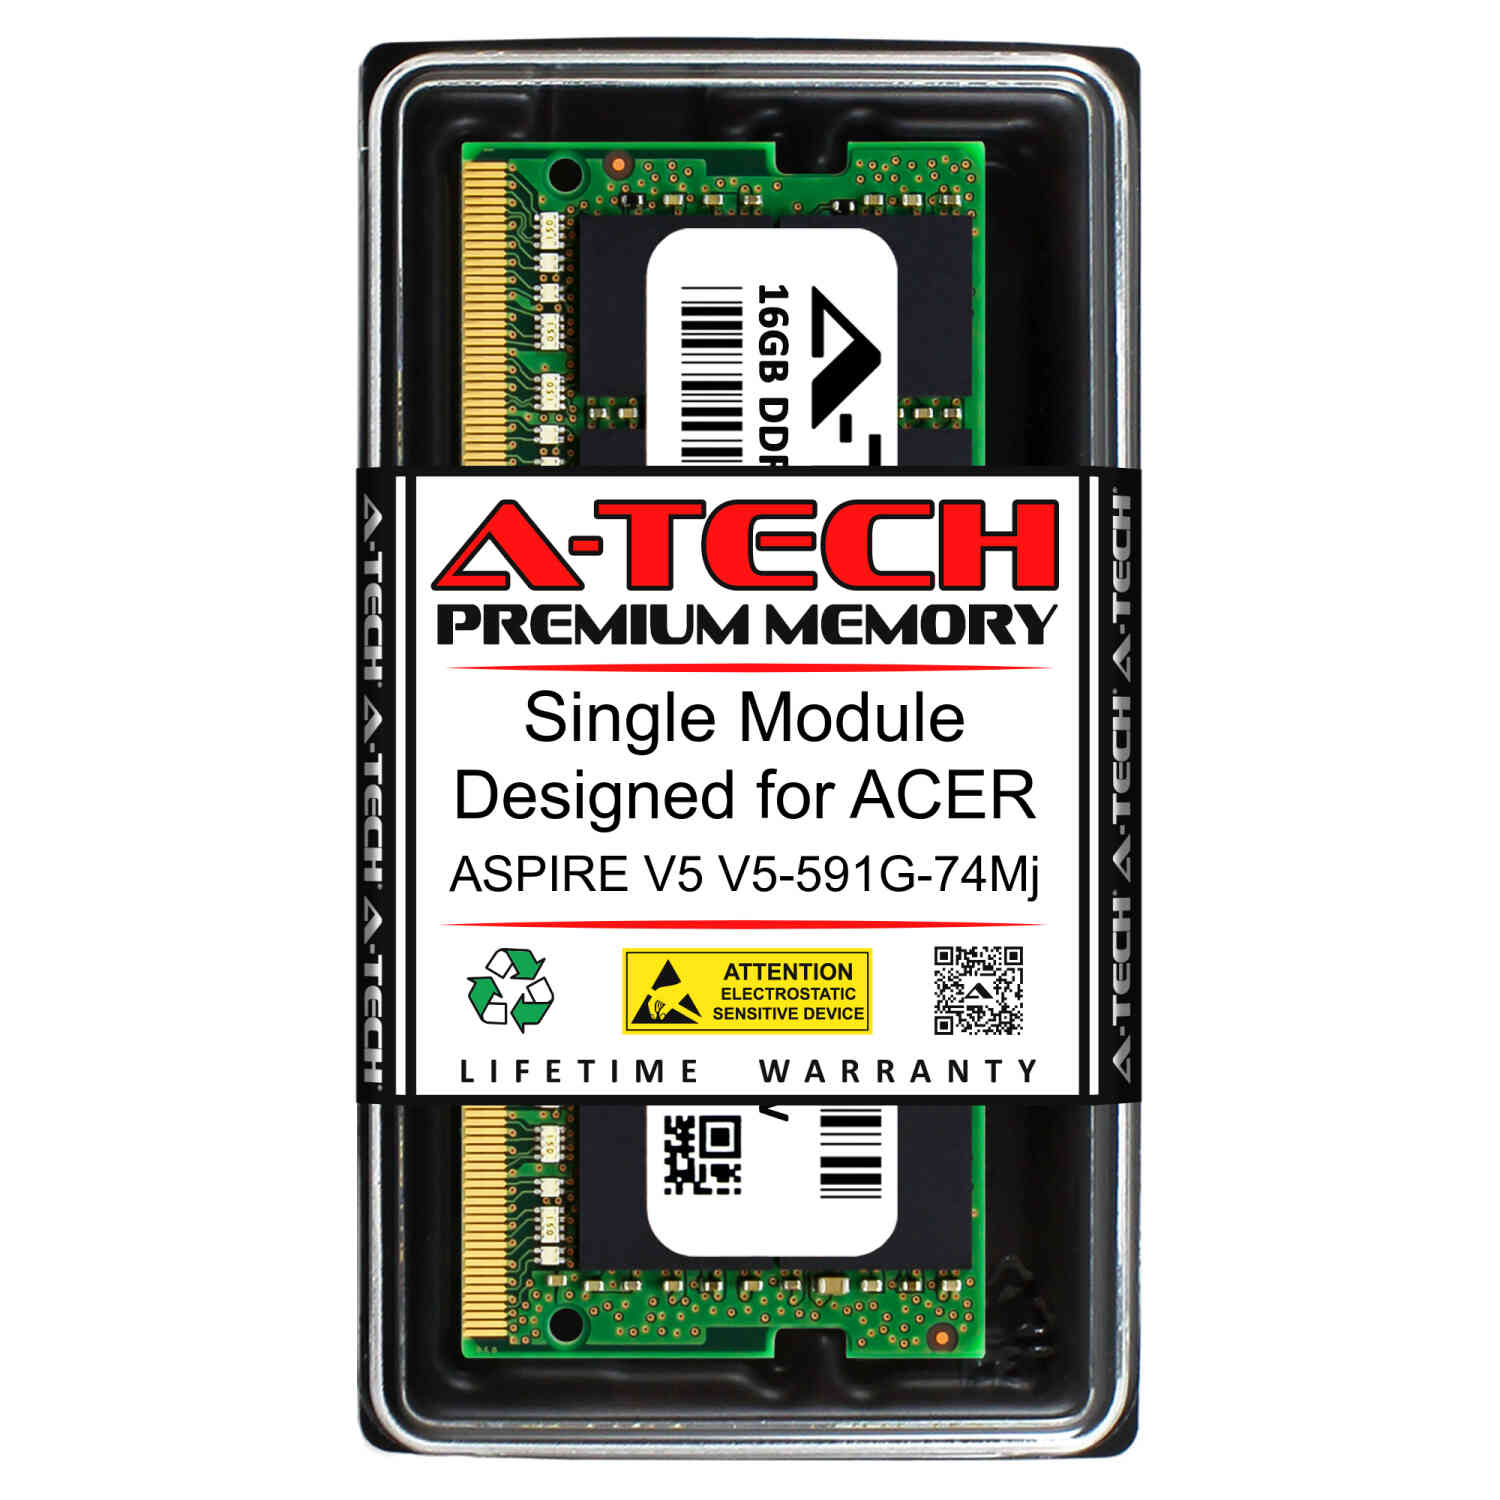 Details about 16GB PC4-17000 DDR4 2133 MHz Memory RAM for ACER ASPIRE V5  V5-591G-74MJ